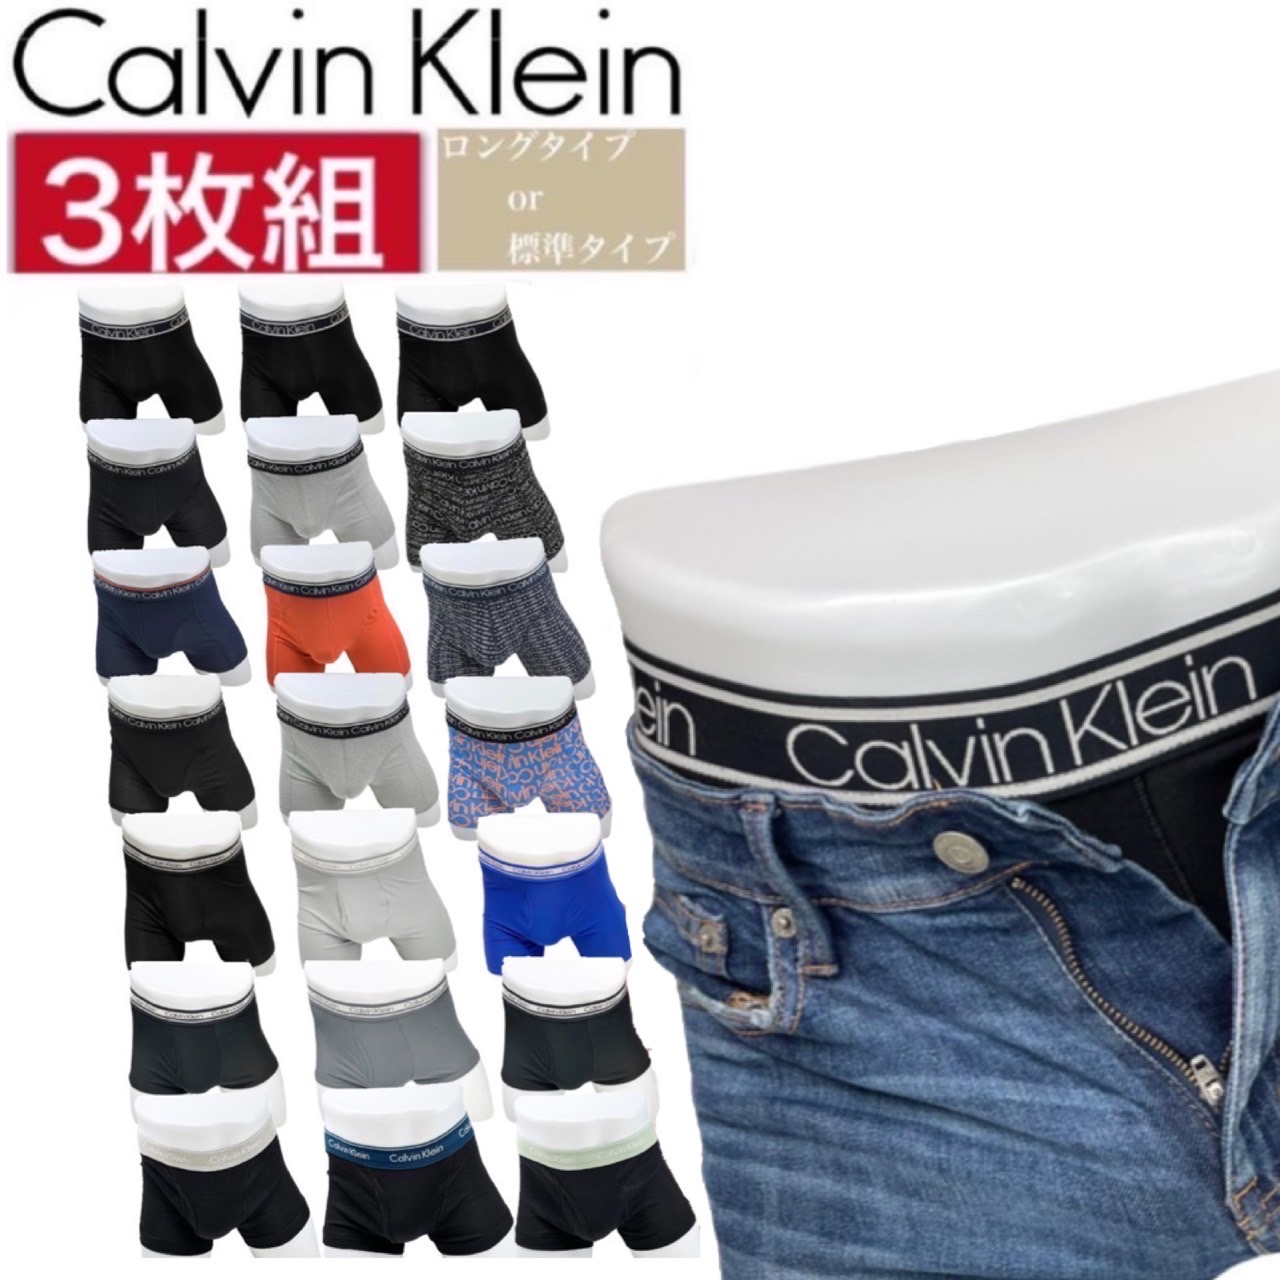 代引き手数料無料カルバンクライン calvin klein アンダーウェア インナーウェア メンズ ボクサーパンツ ロング ショート ブリーフ 下着 3枚セット CALVIN KLEIN BOXER BRIEF